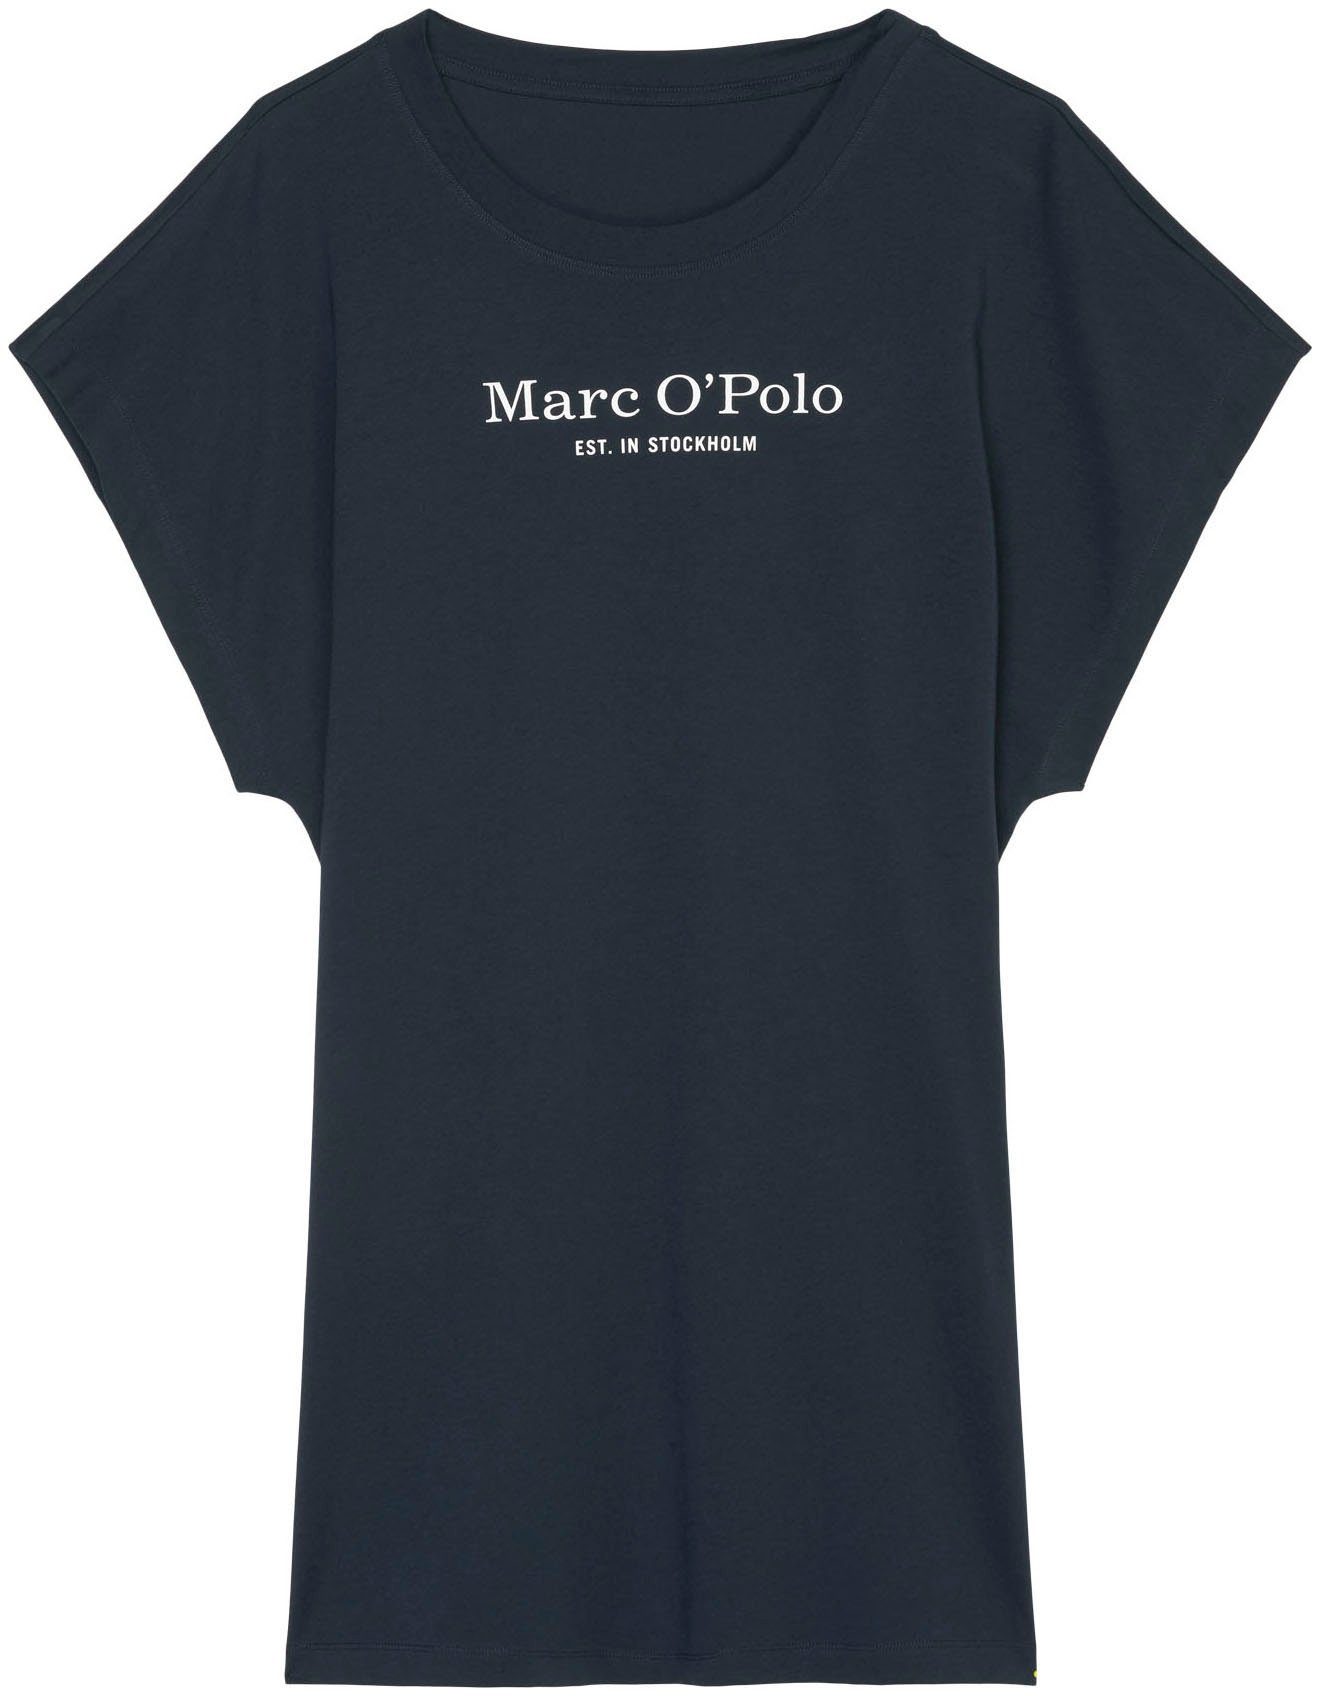 O'Polo Marc navy Nachthemd 898dark